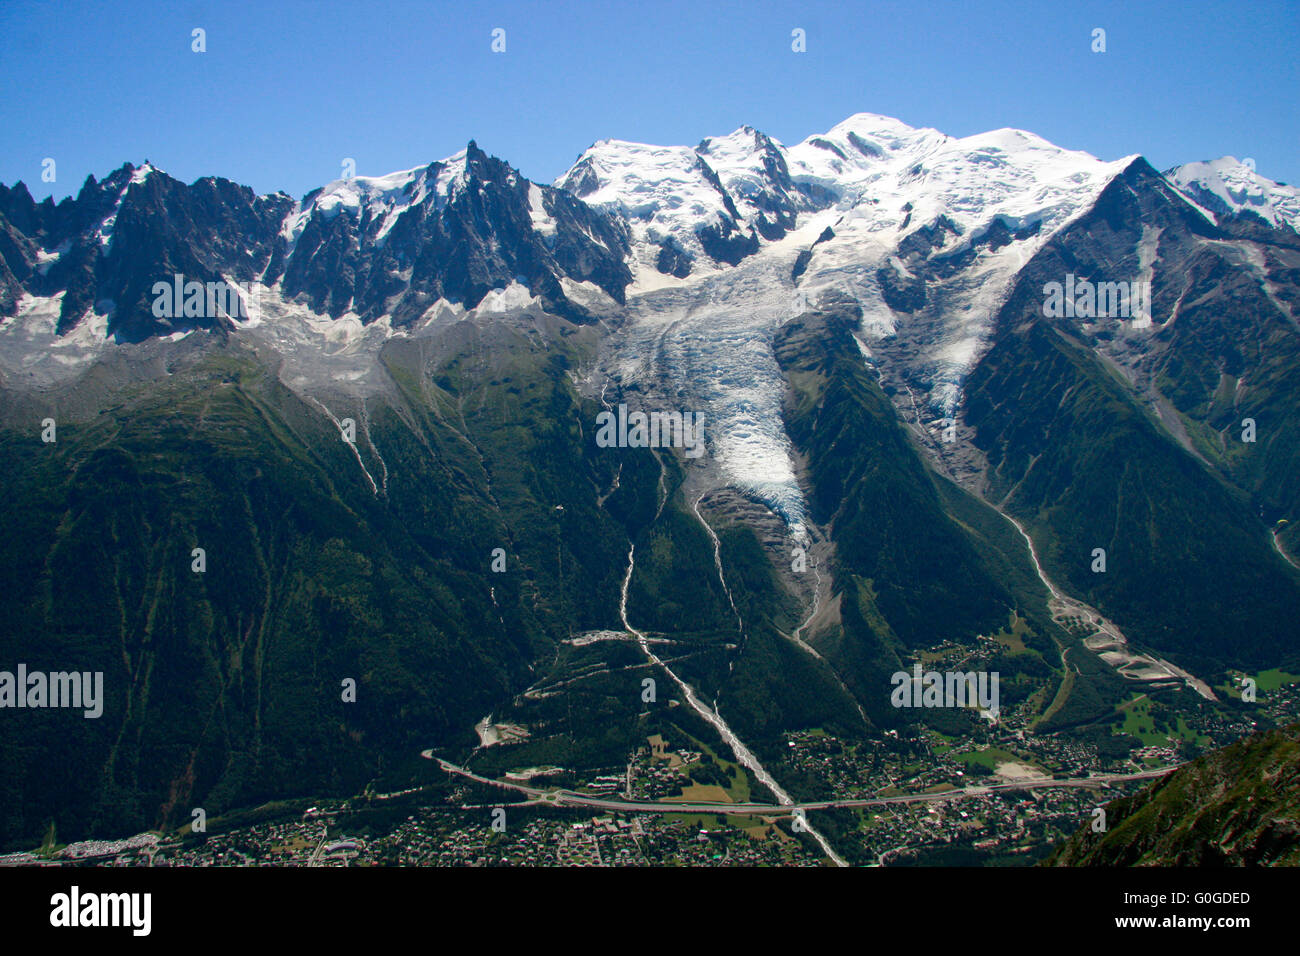 Mont Blanc-Massiv u.a. mit der Aiguille du Midi und dem Glacier des Bosson, Chamonix, Frankreich. Stock Photo